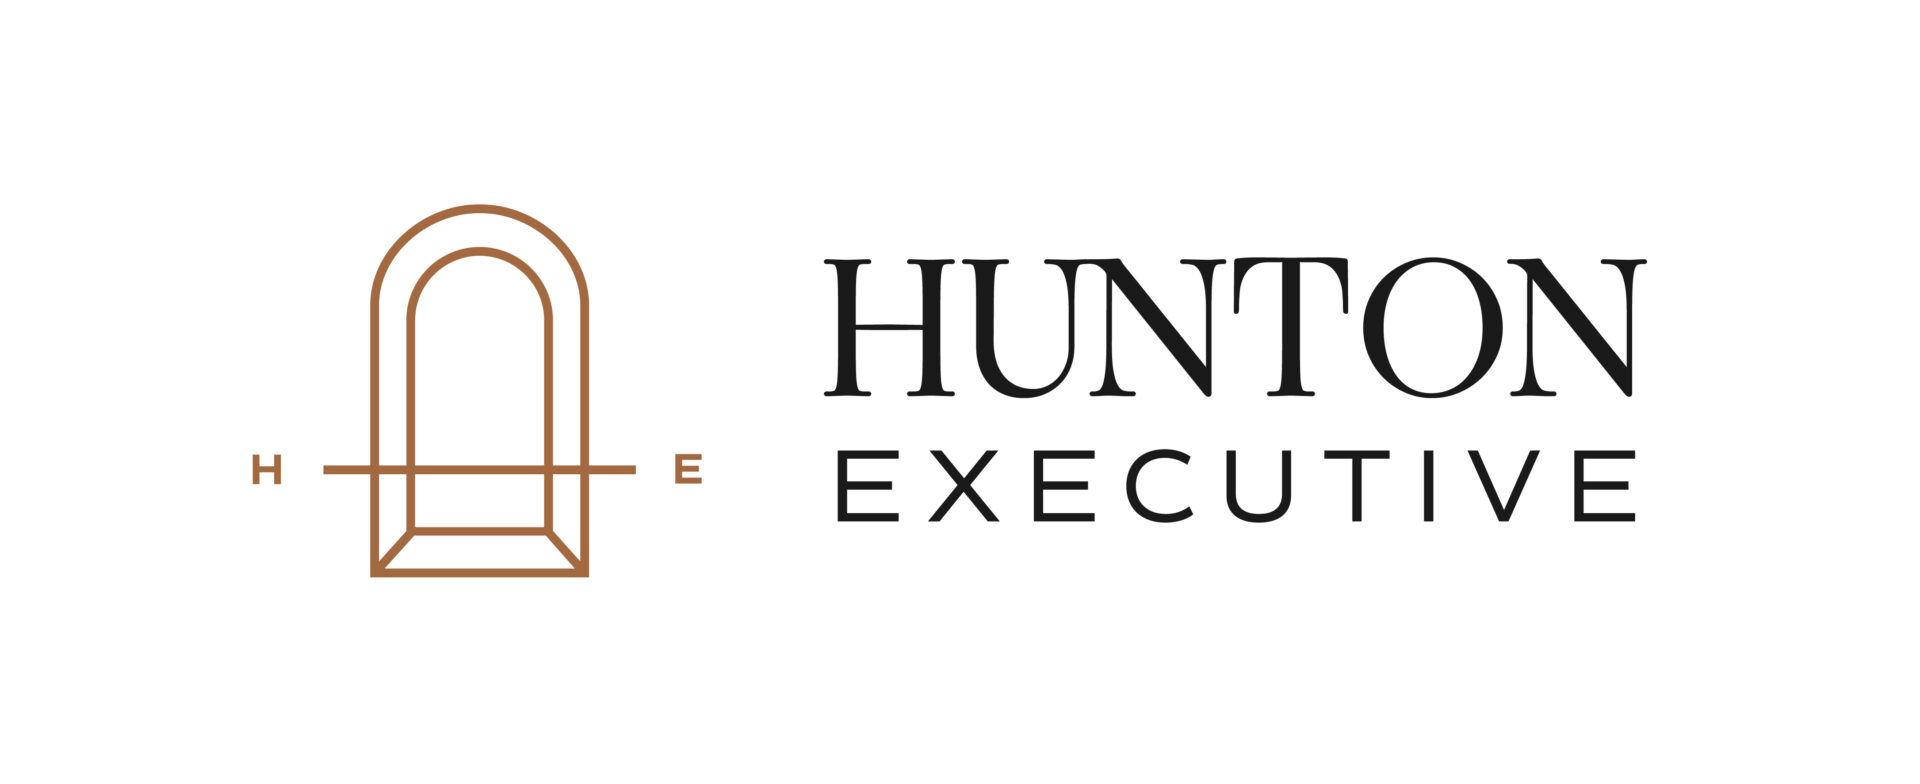 Hunton Executive logo